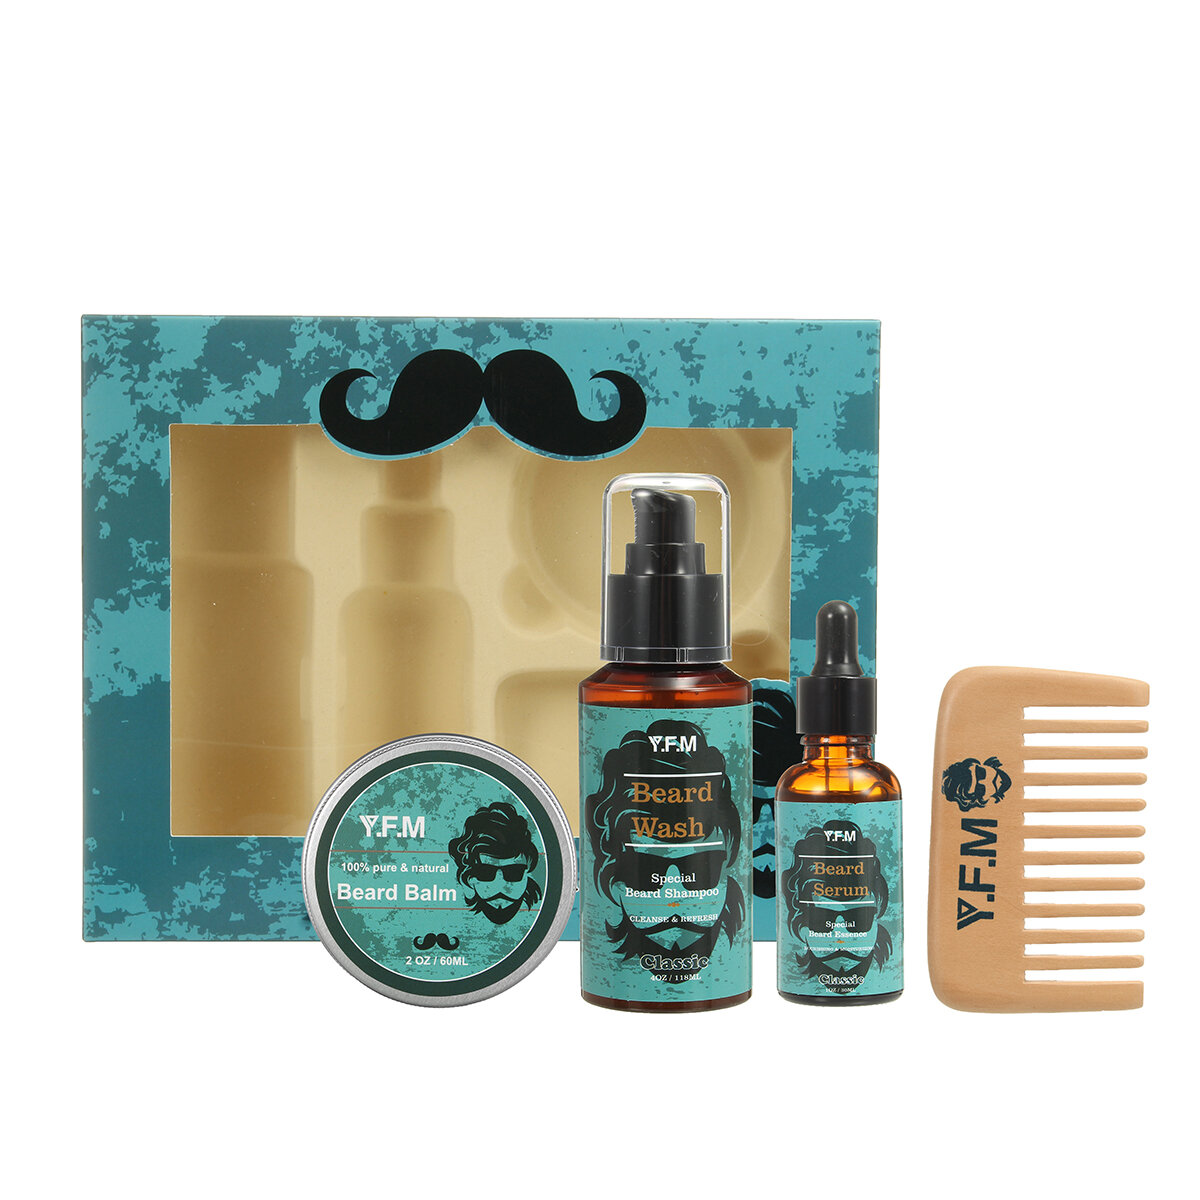 4Pcs Beard Oil Brush Grooming Balm Beard Comb Set Home & Travel Kit Gift For Man